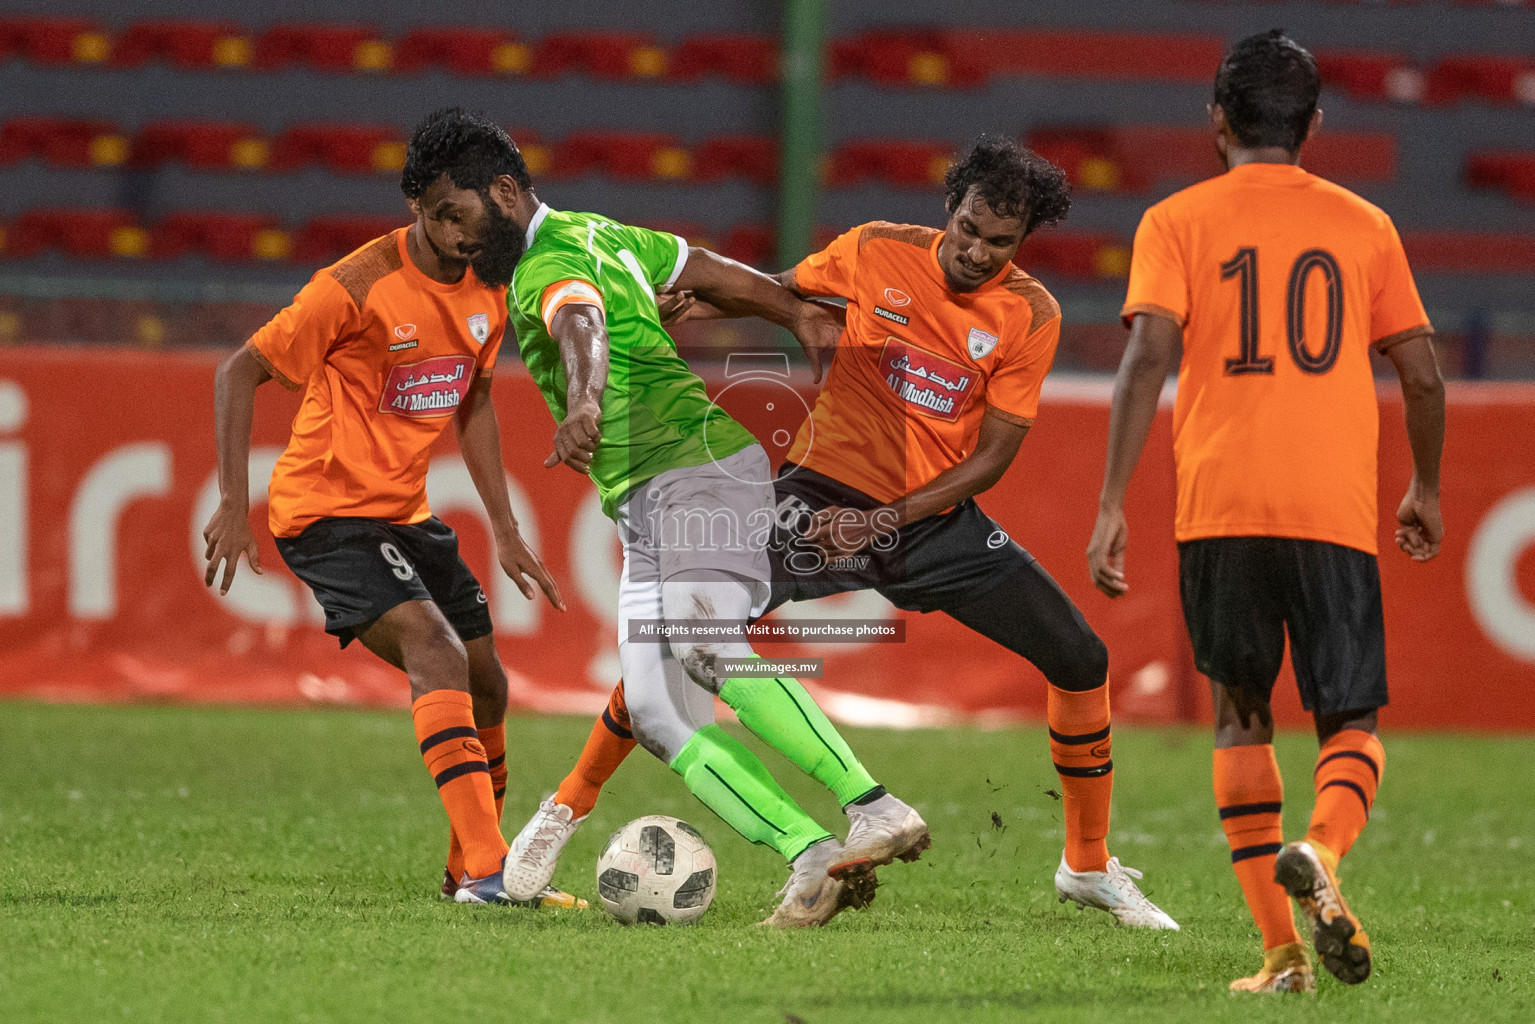 Green Streets vs Club Eagles in Dhiraagu Dhivehi Premier League 2019, in Male' Maldives on 28th Sep 2019. Photos:Suadh Abdul Sattar / images.mv